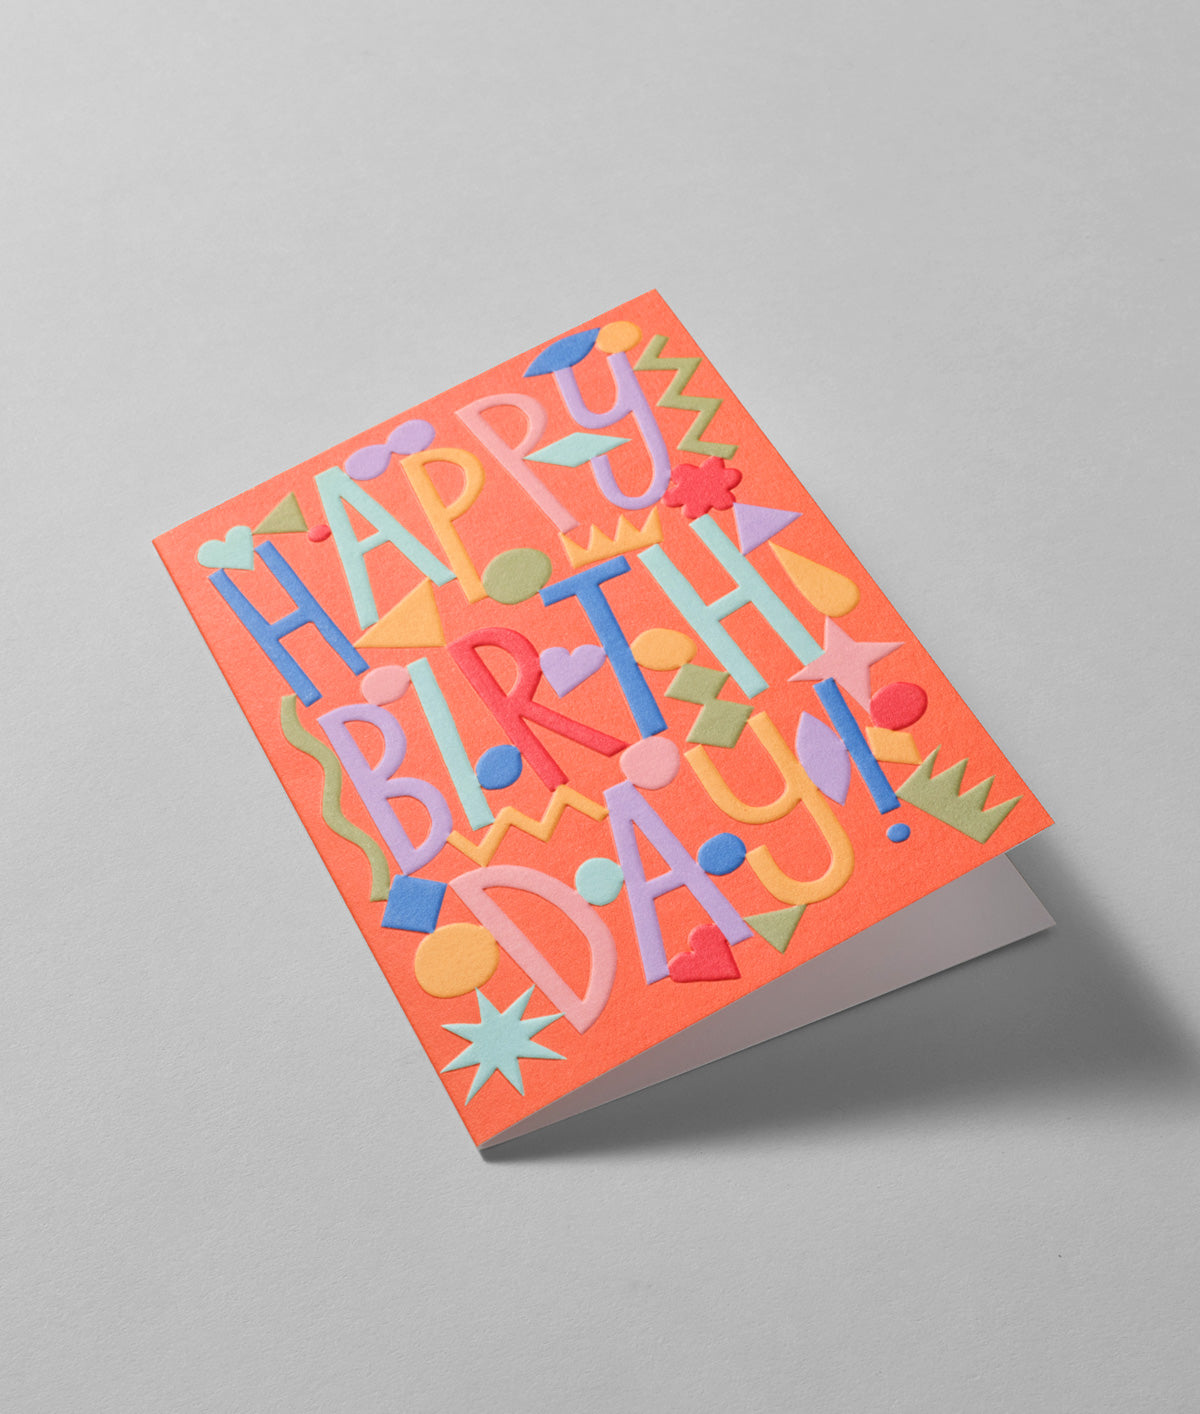 Happy Birthday Embossed Greetings Card